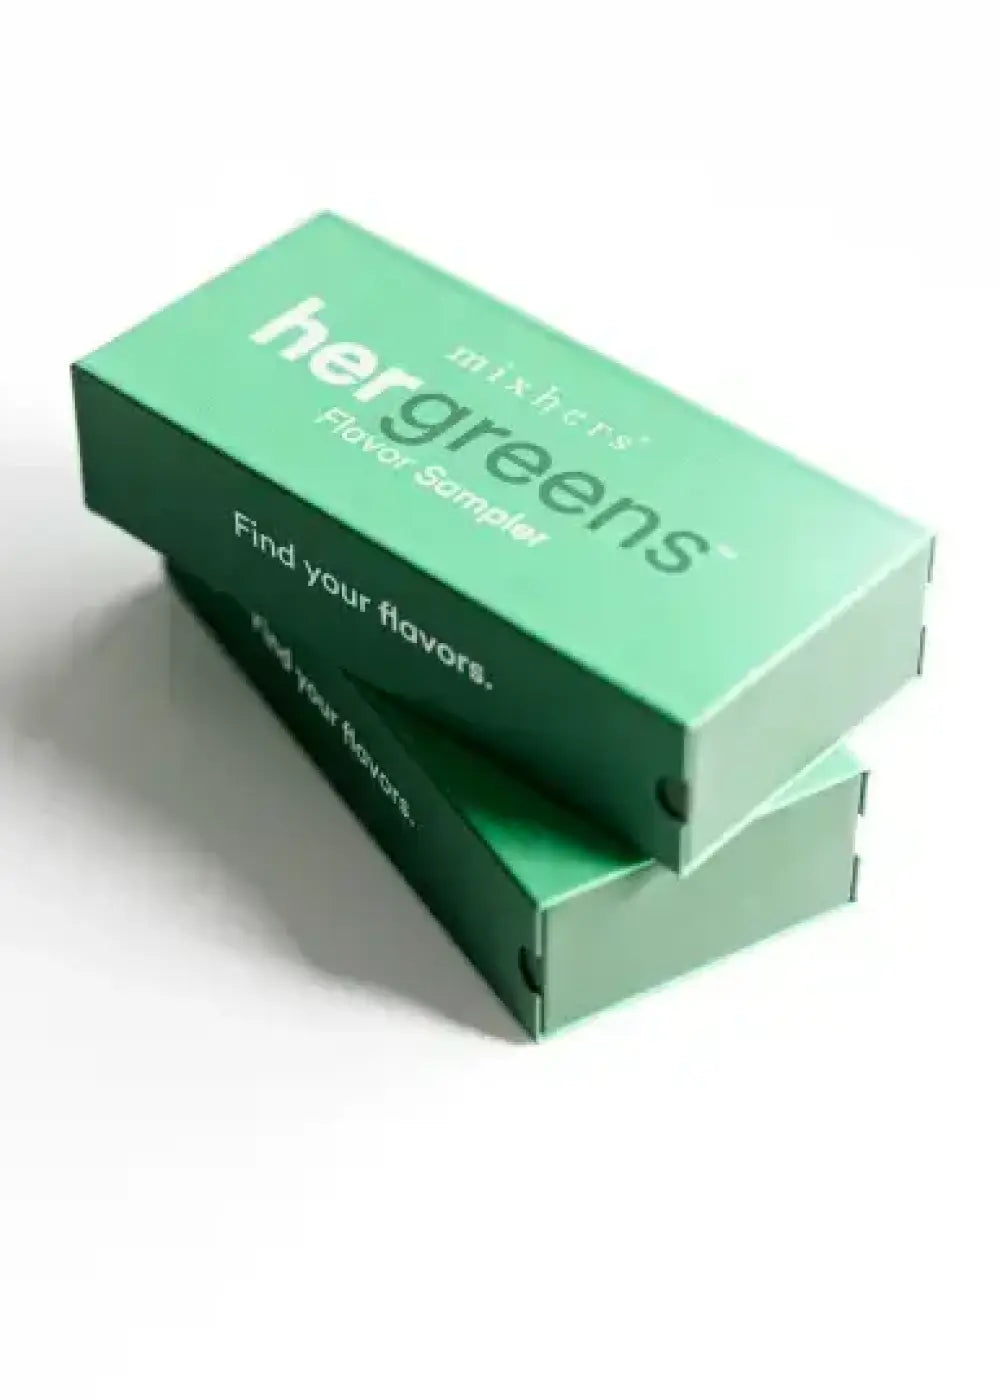 Hergreens Flavor Sampler image 1